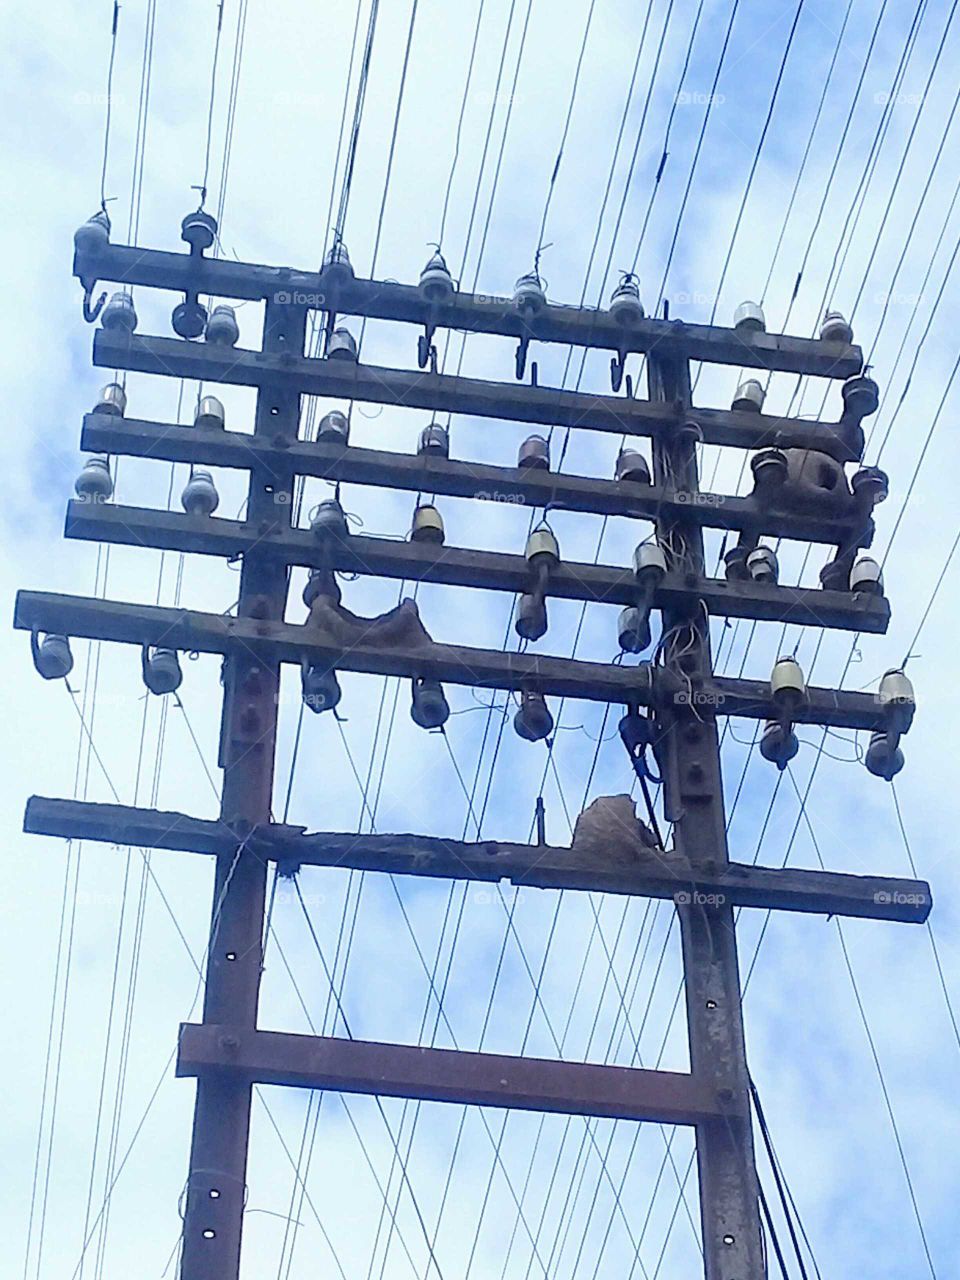 Torre de tendido eléctrico habitado por pájaros llamados "horneros", cuyos nidos son edificados con barro y ramitas secas en lo alto de postes y alambrados.